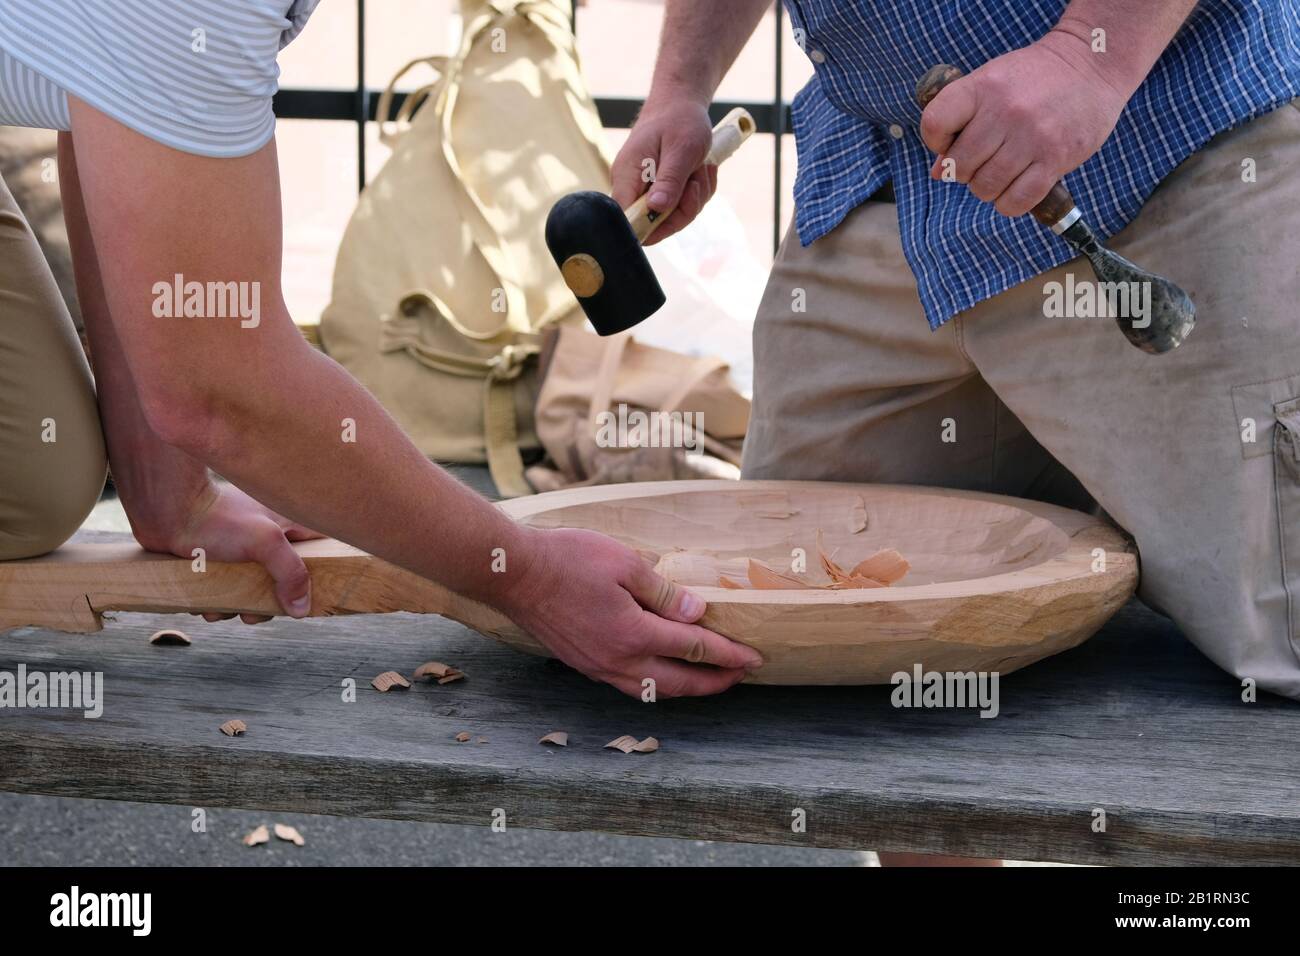 Holzschnitzerei. Zwei Meister kardieren Holzhandwerk mit Holzbearbeitungswerkzeug, Hände nah oben. Zimmerei und Handwerkskunst Stockfoto